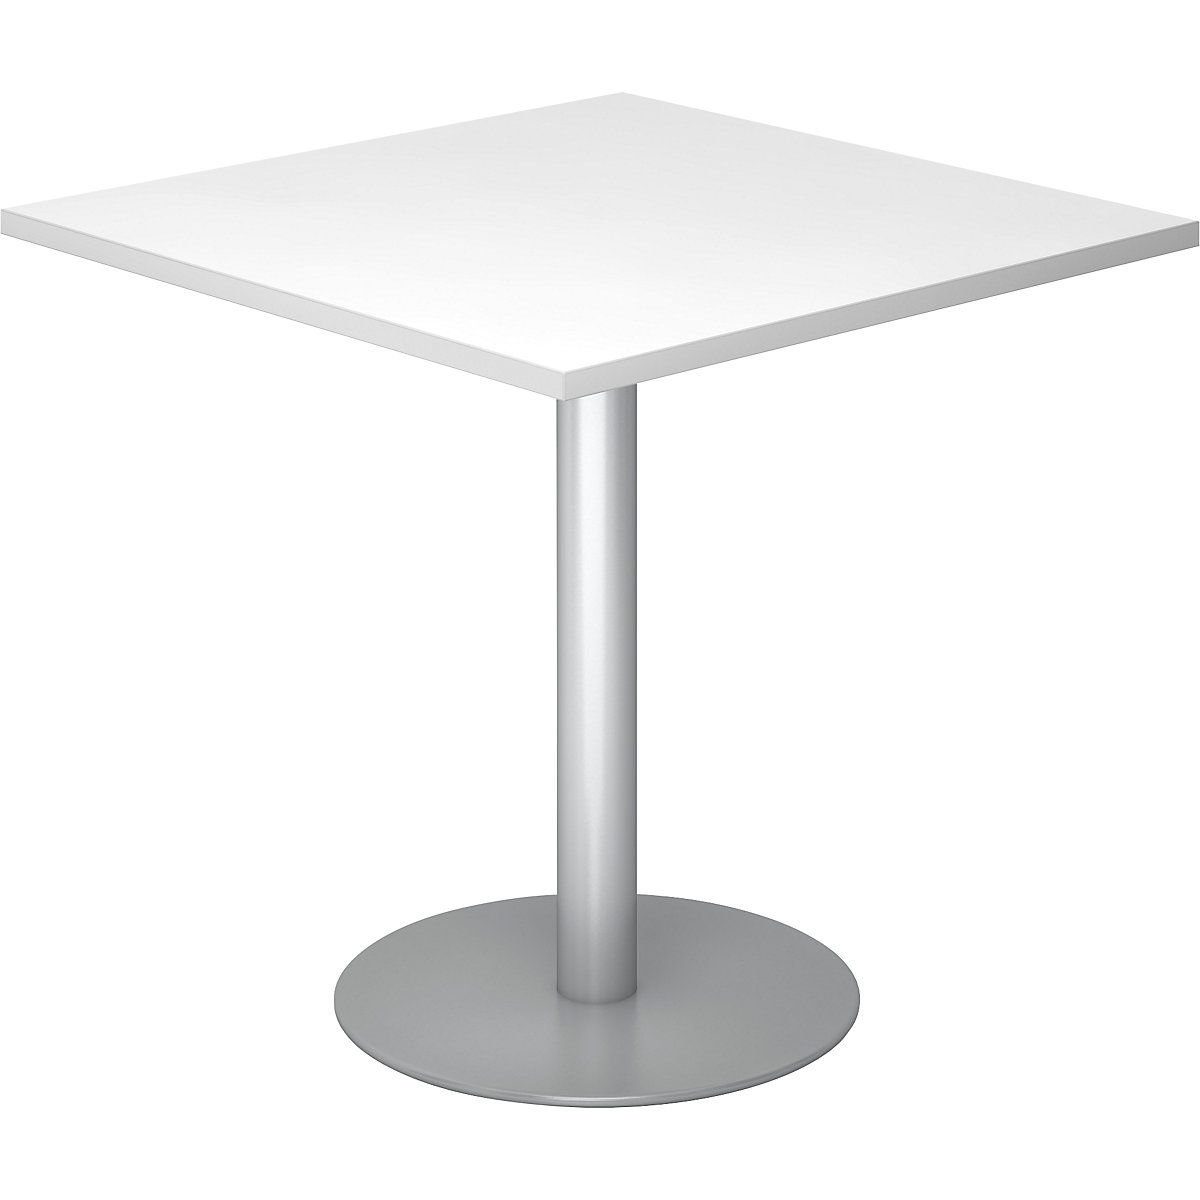 Konferenčna miza, DxŠ 800 x 800 mm, višina 755 mm, srebrno ogrodje, bela plošča-7